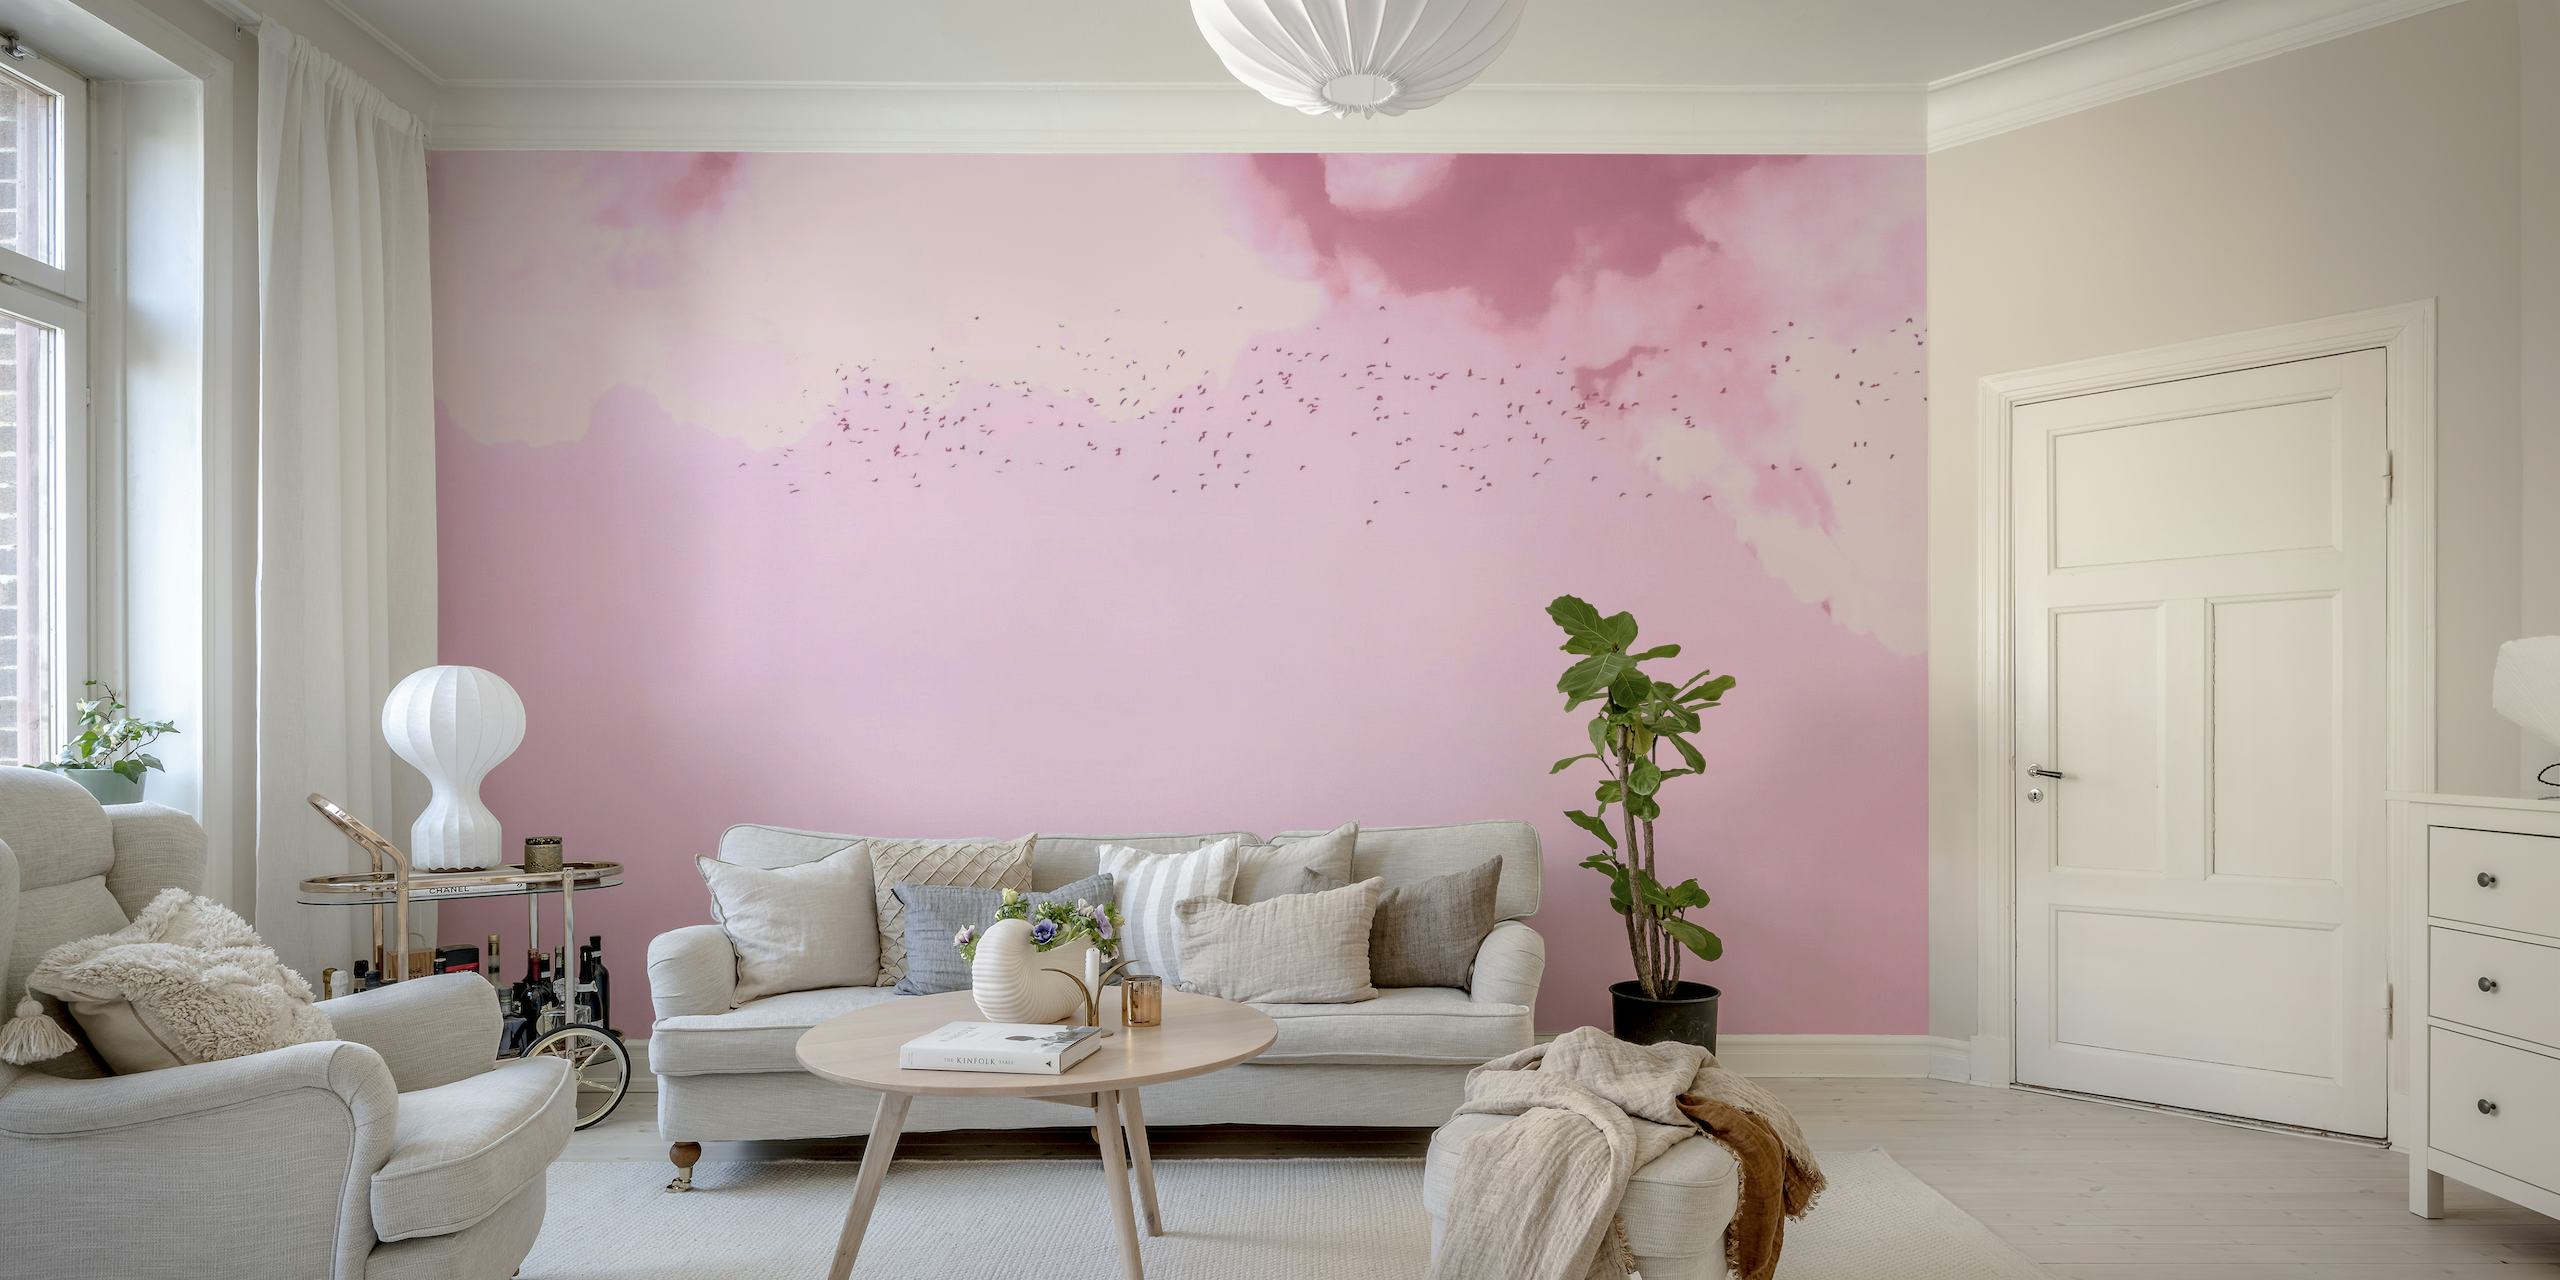 Une fresque murale de rêve rose et magenta représentant des oiseaux en vol parmi des nuages doux